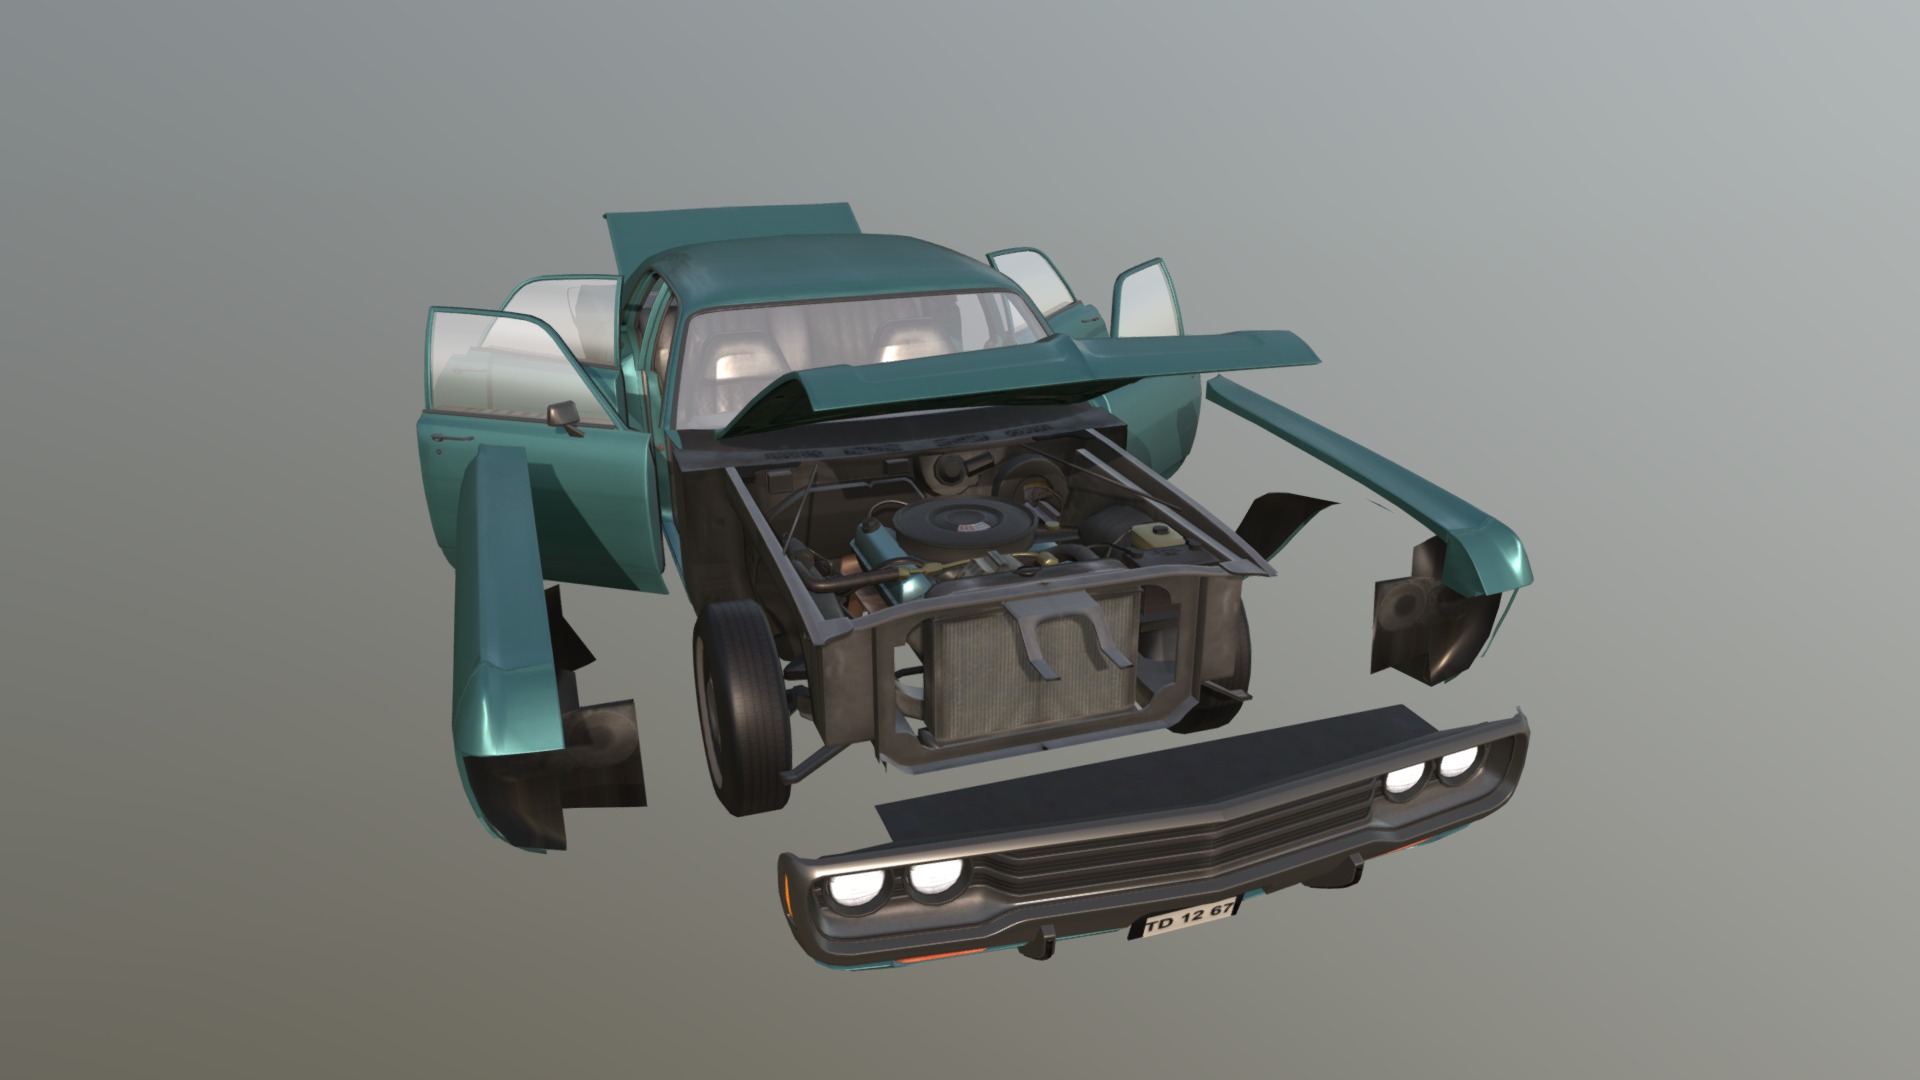 Real Car 12 Separated Parts - 3D model by Maker Games Studios (@MakerGamesStudios) 3d model